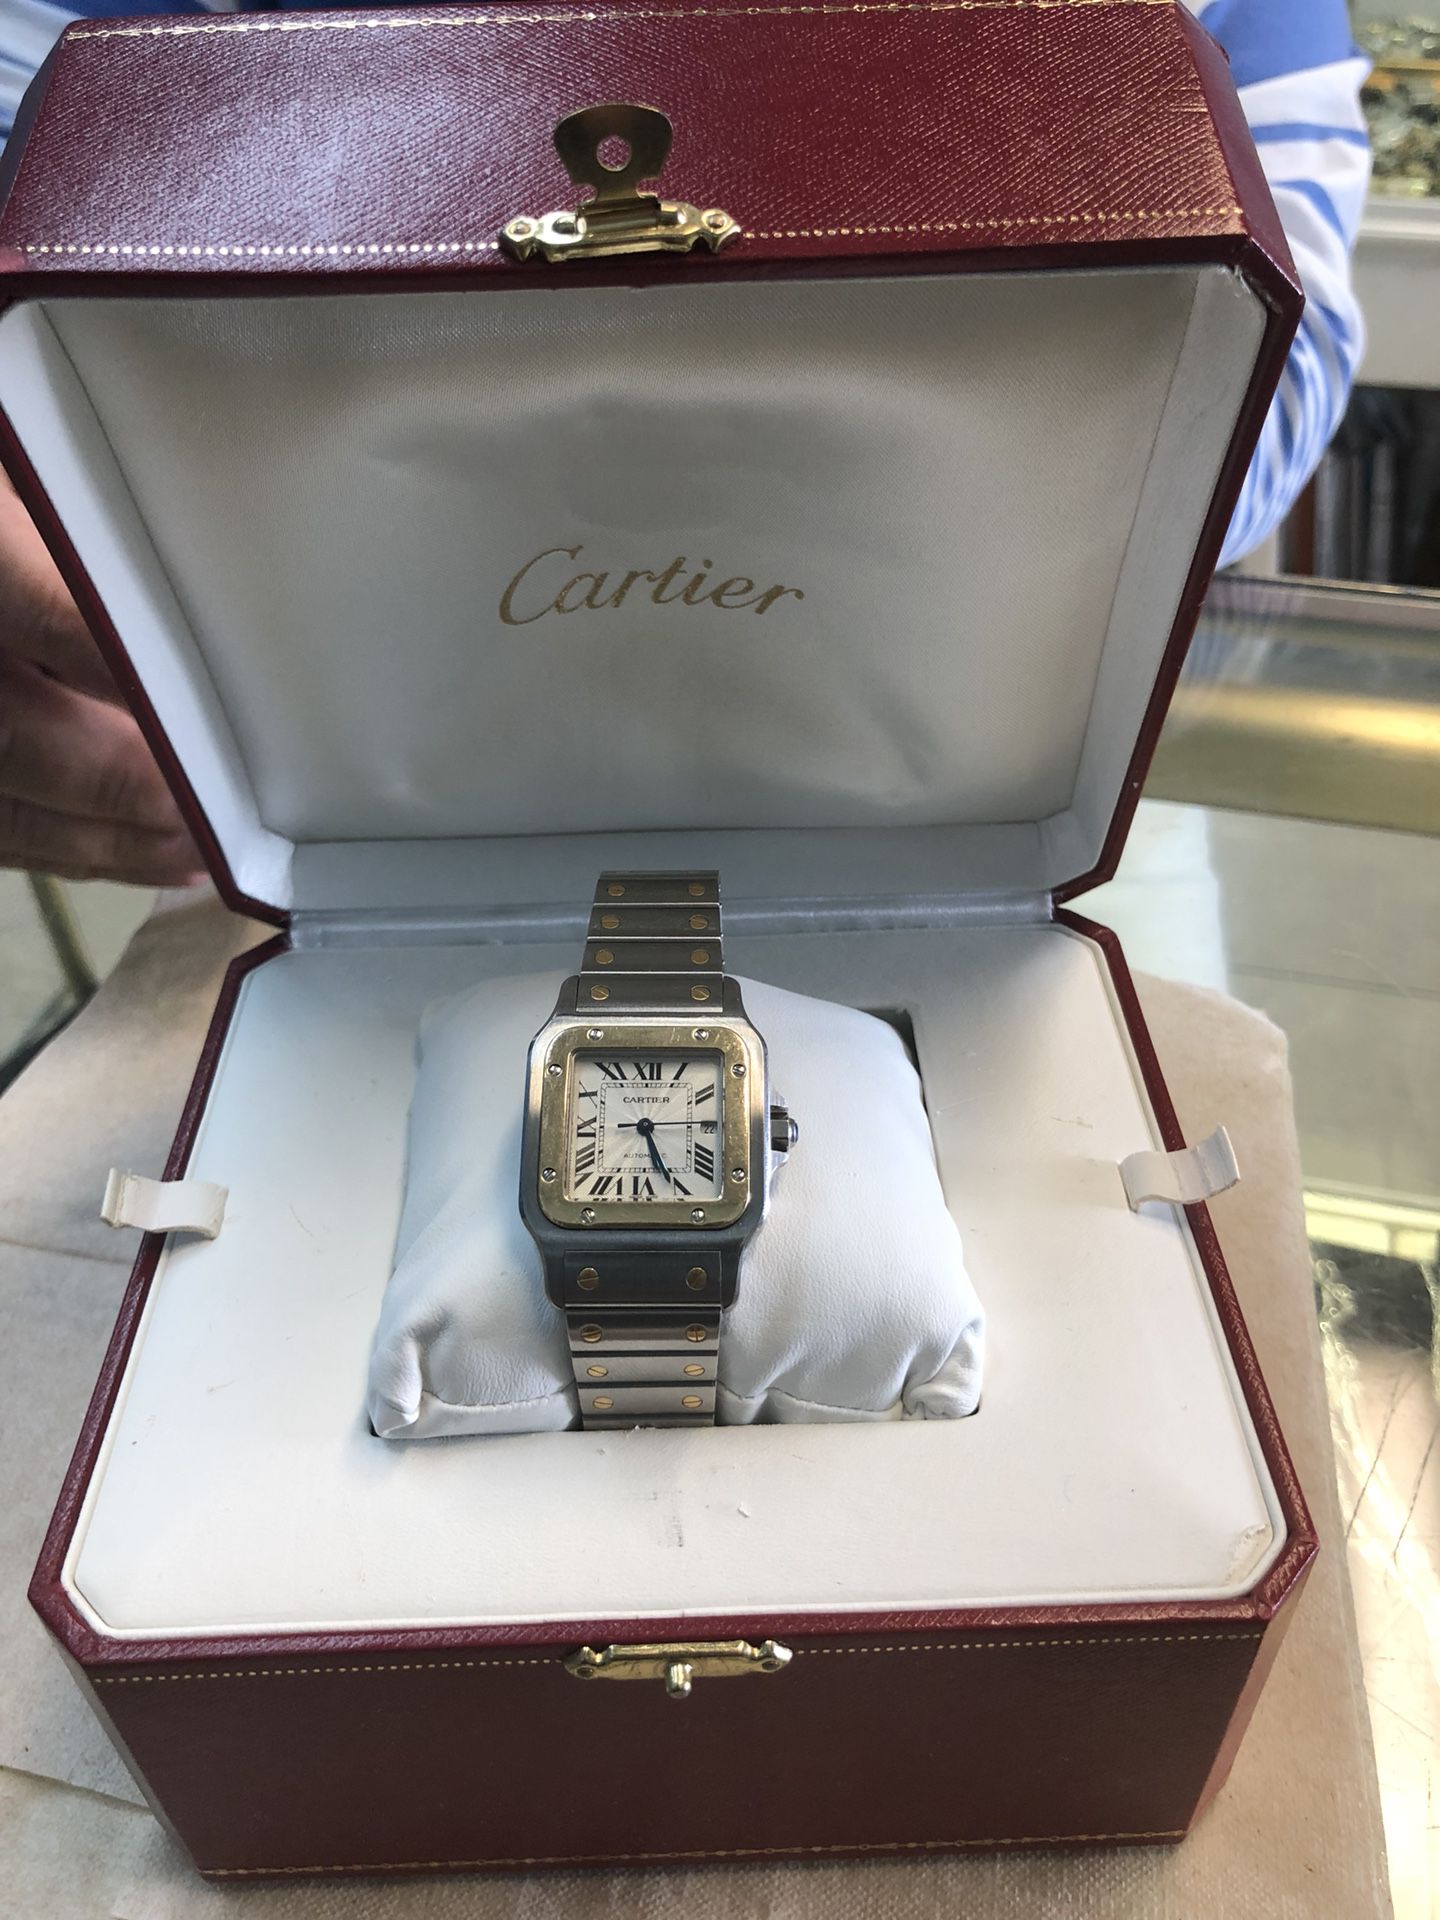 Cartier santos 2316 18k stainless steel watch for Sale in Miami Beach, FL -  OfferUp